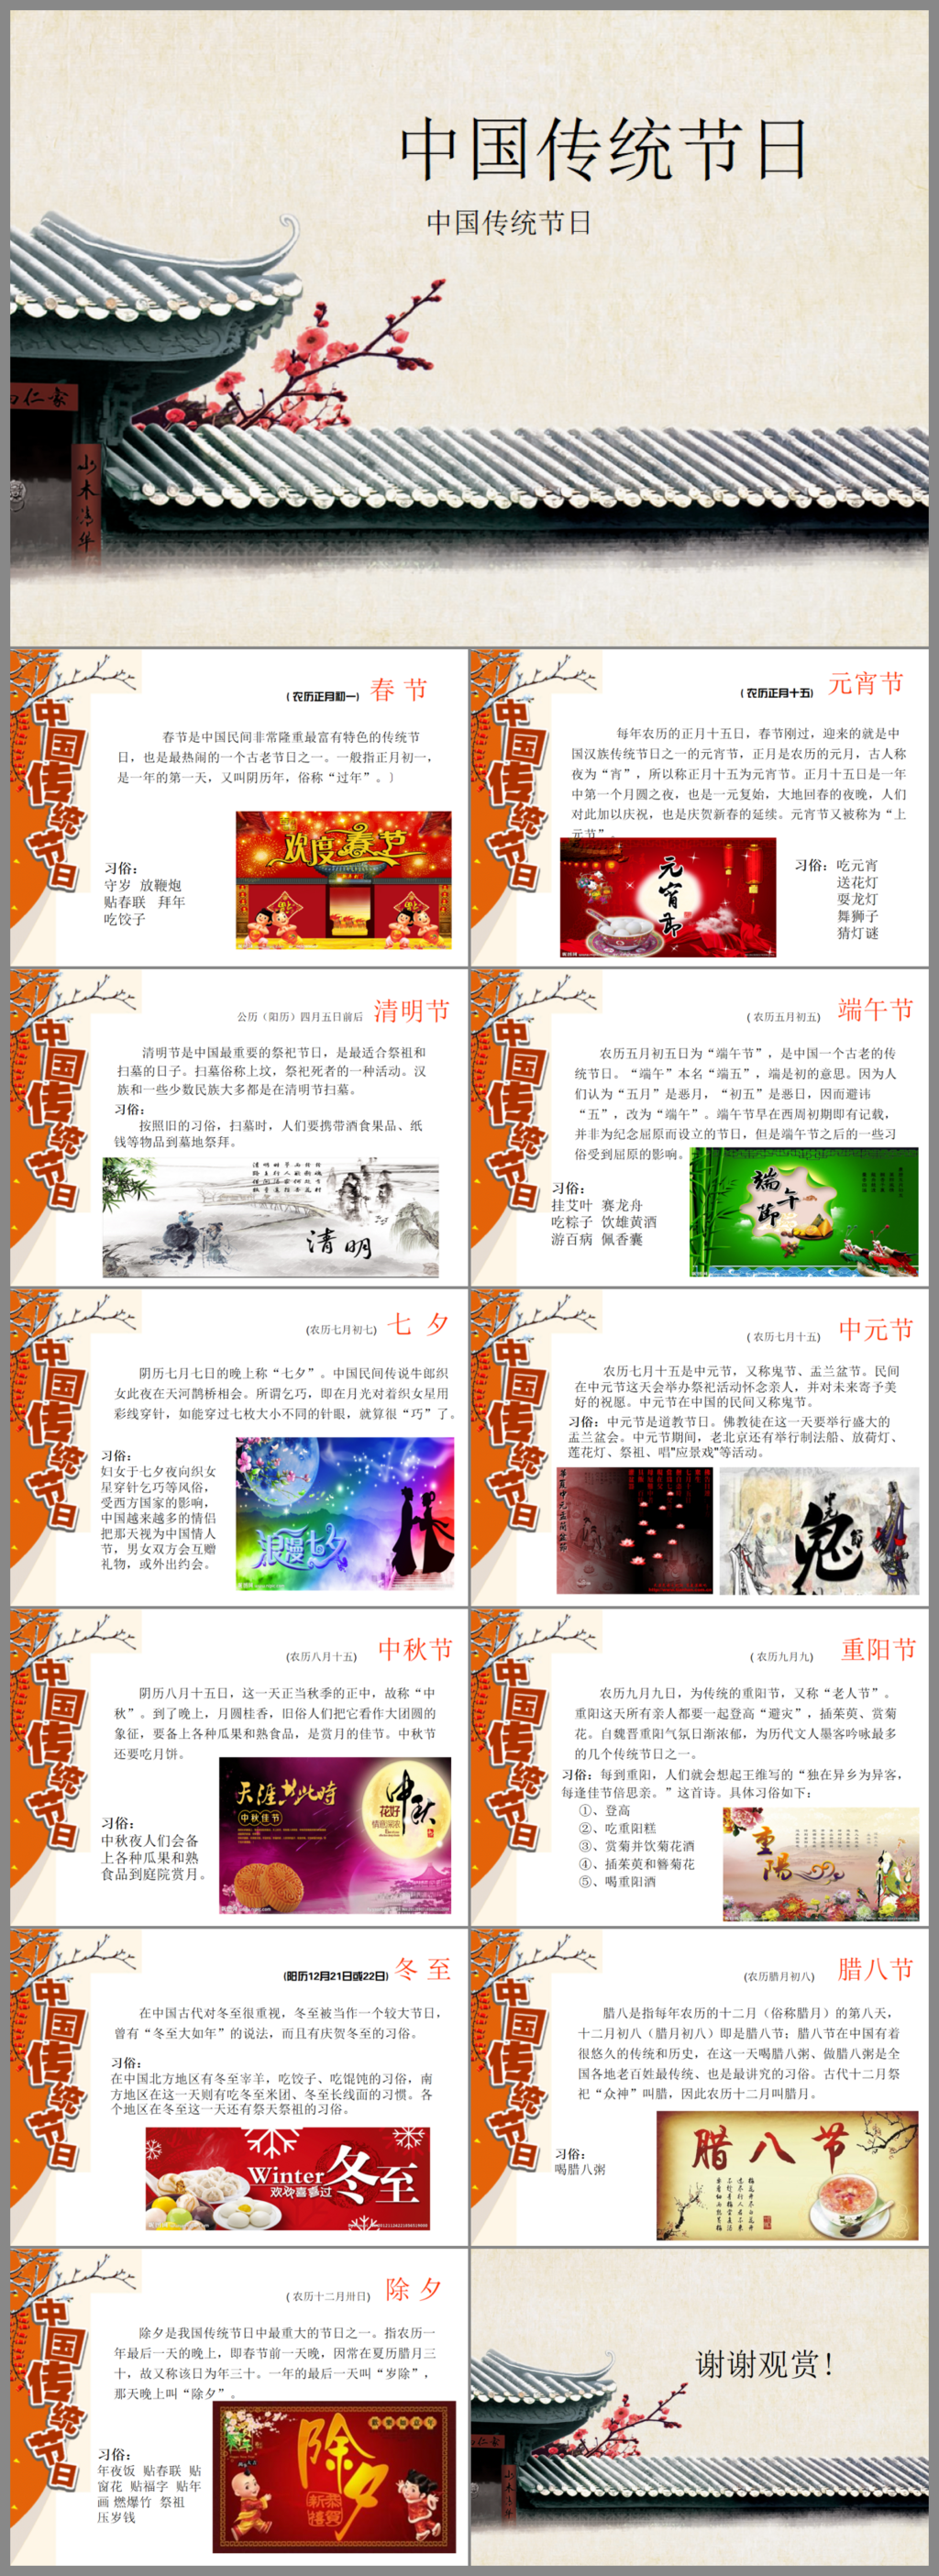 水墨动态中国风中国传统节日传统文化中秋节ppt模板下载